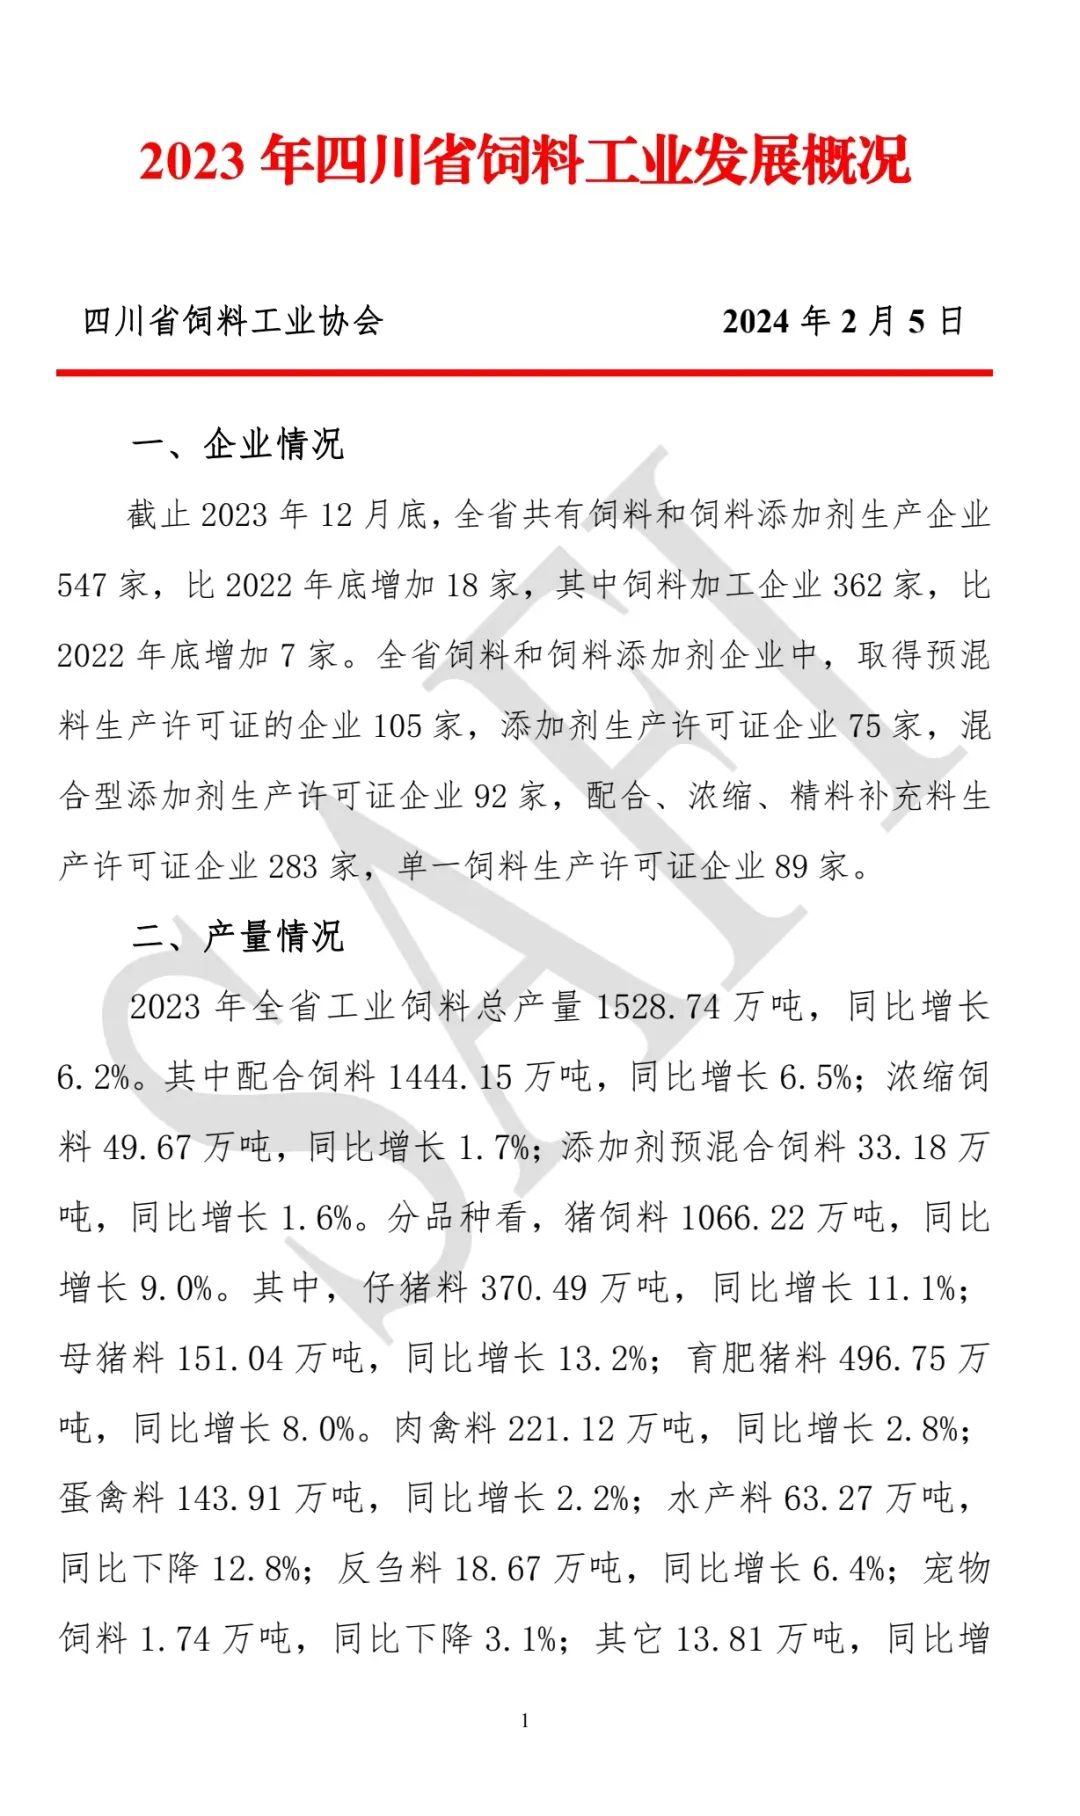 2023年四川省饲料工业发展概况：饲料加工企业362家，比2022年底增加7家